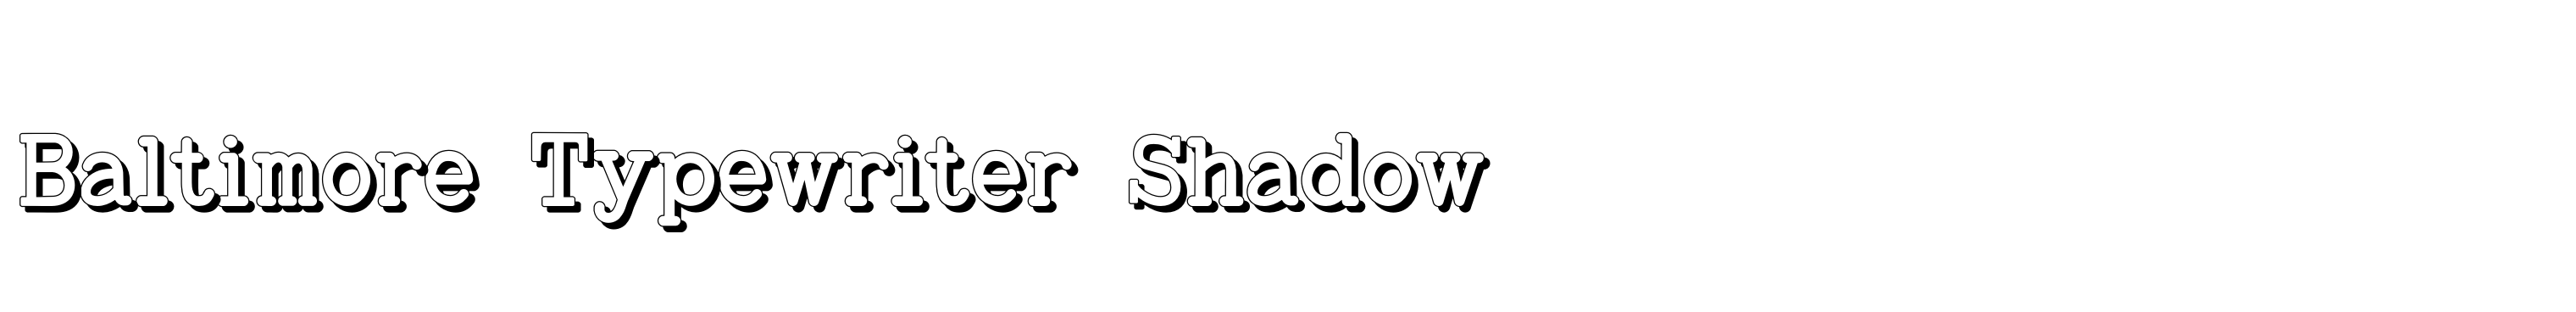 Baltimore Typewriter Shadow